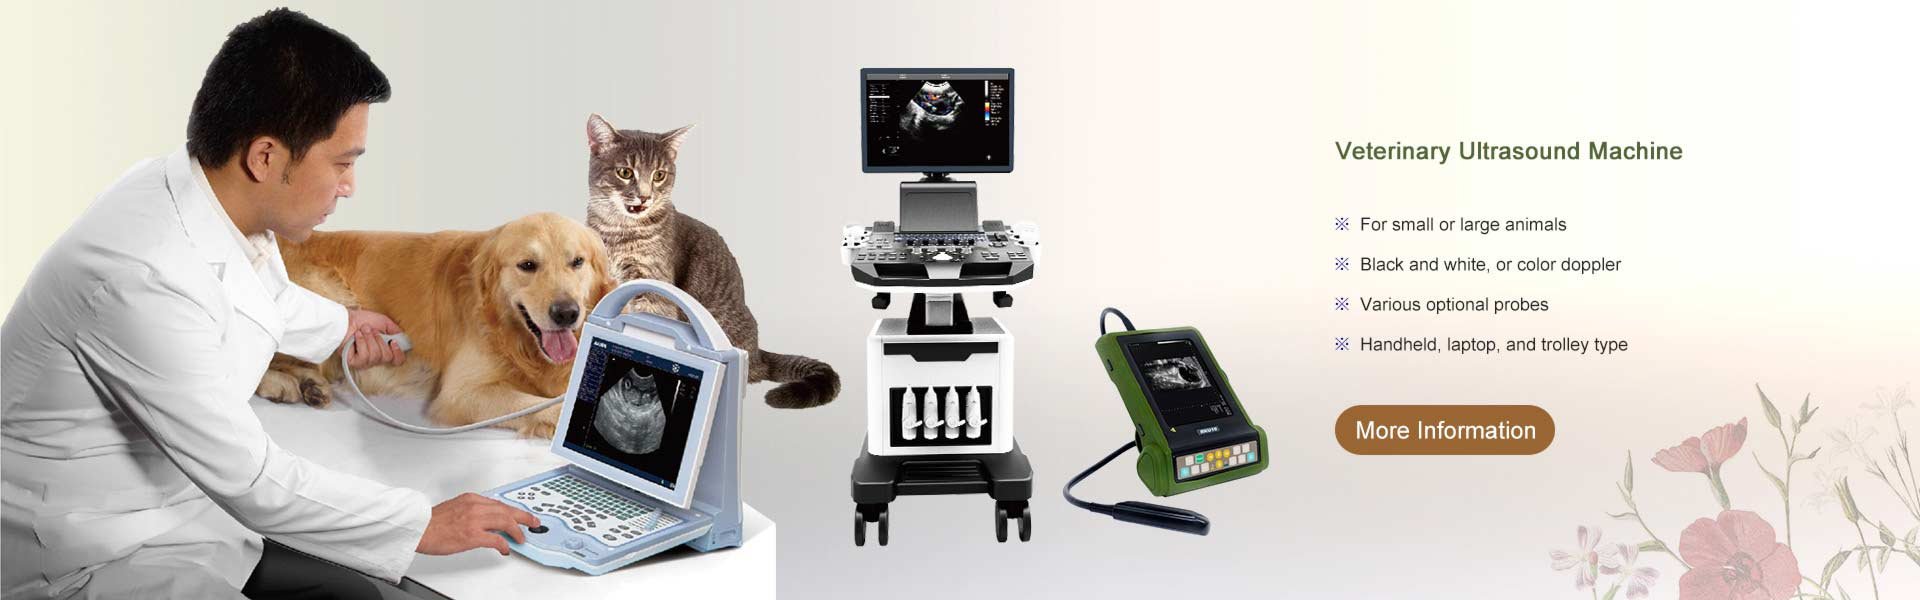 Veterinary Ultrasound Machines